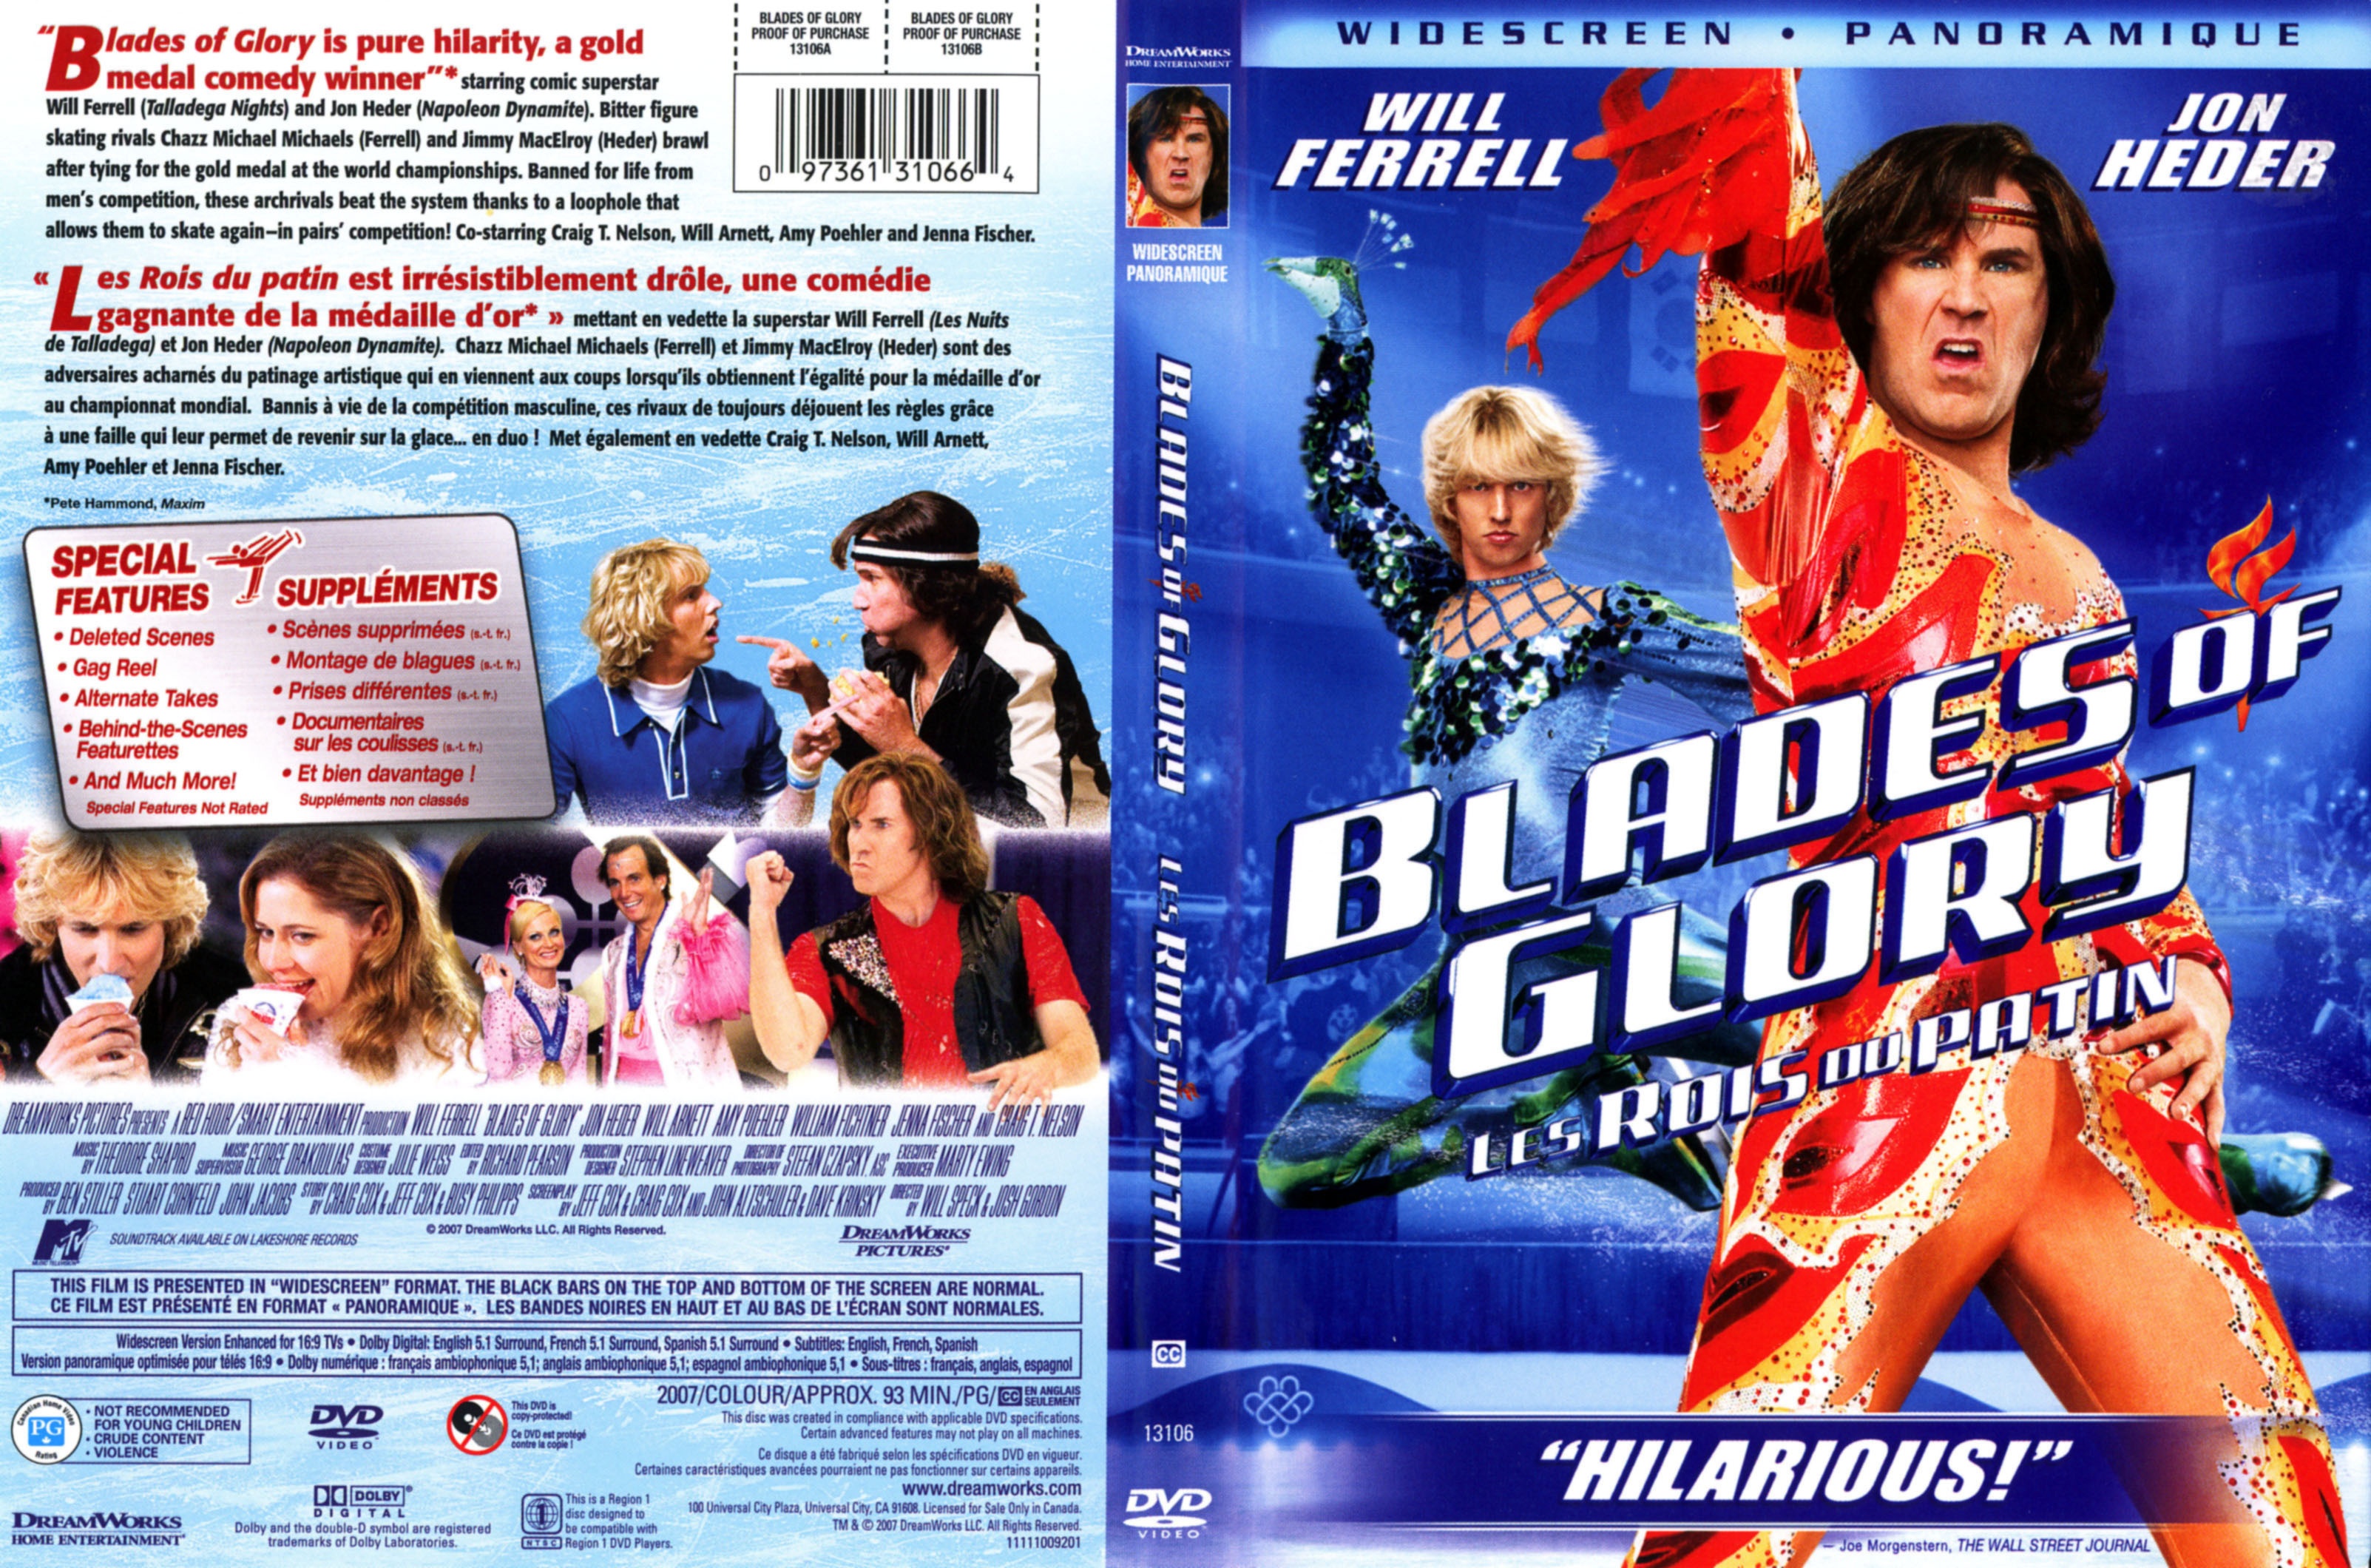 Jaquette DVD Blades of glory Les rois du patin Zone 1